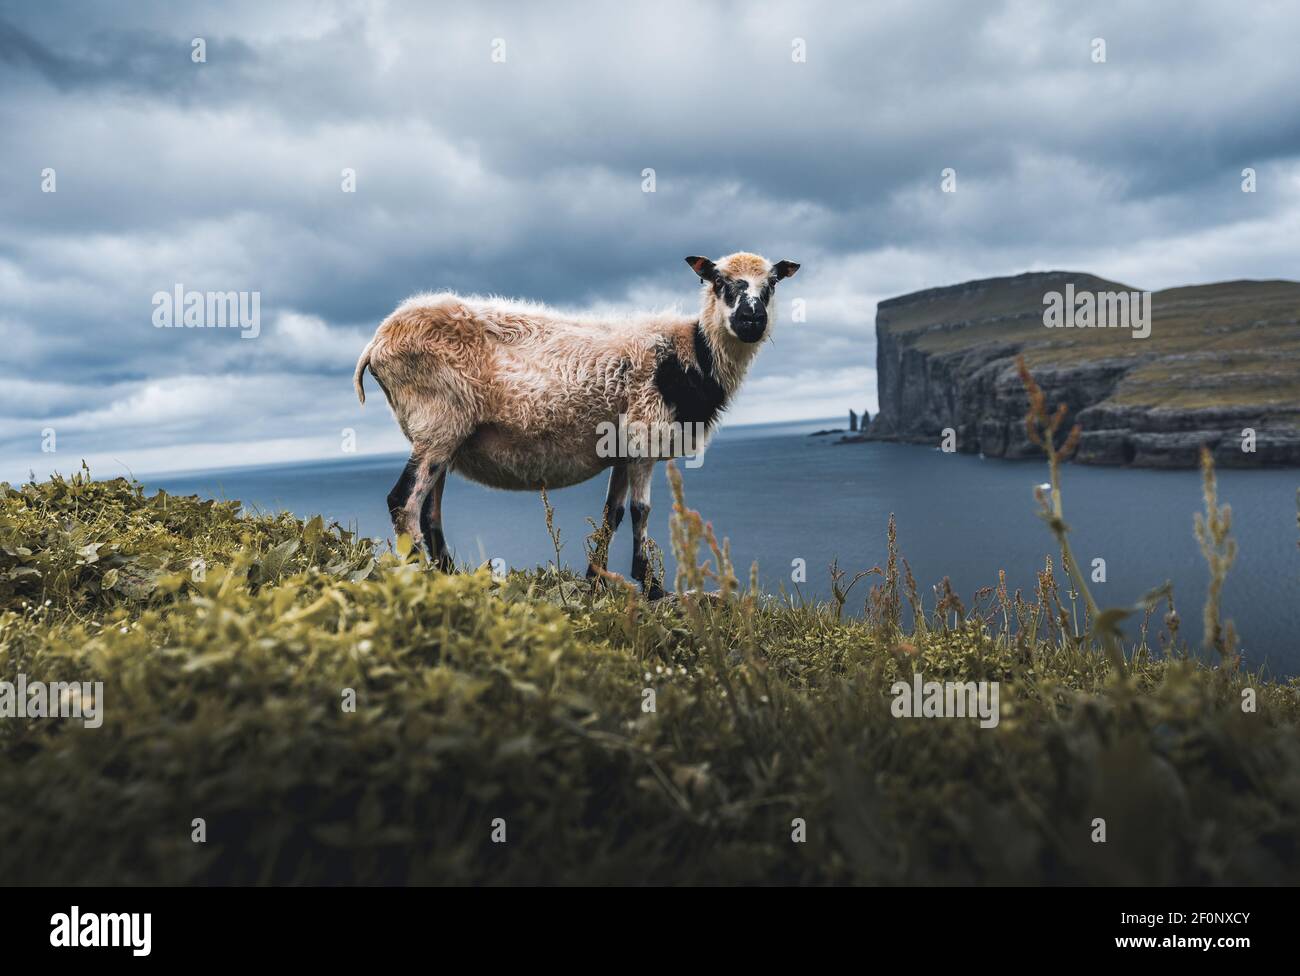 Schafe Tiere mit Wolle auf Hügel oder Berg oben mit grünem Gras und Steine auf blauen bewölkten Himmel Hintergrund in Färöer Inseln Stockfoto